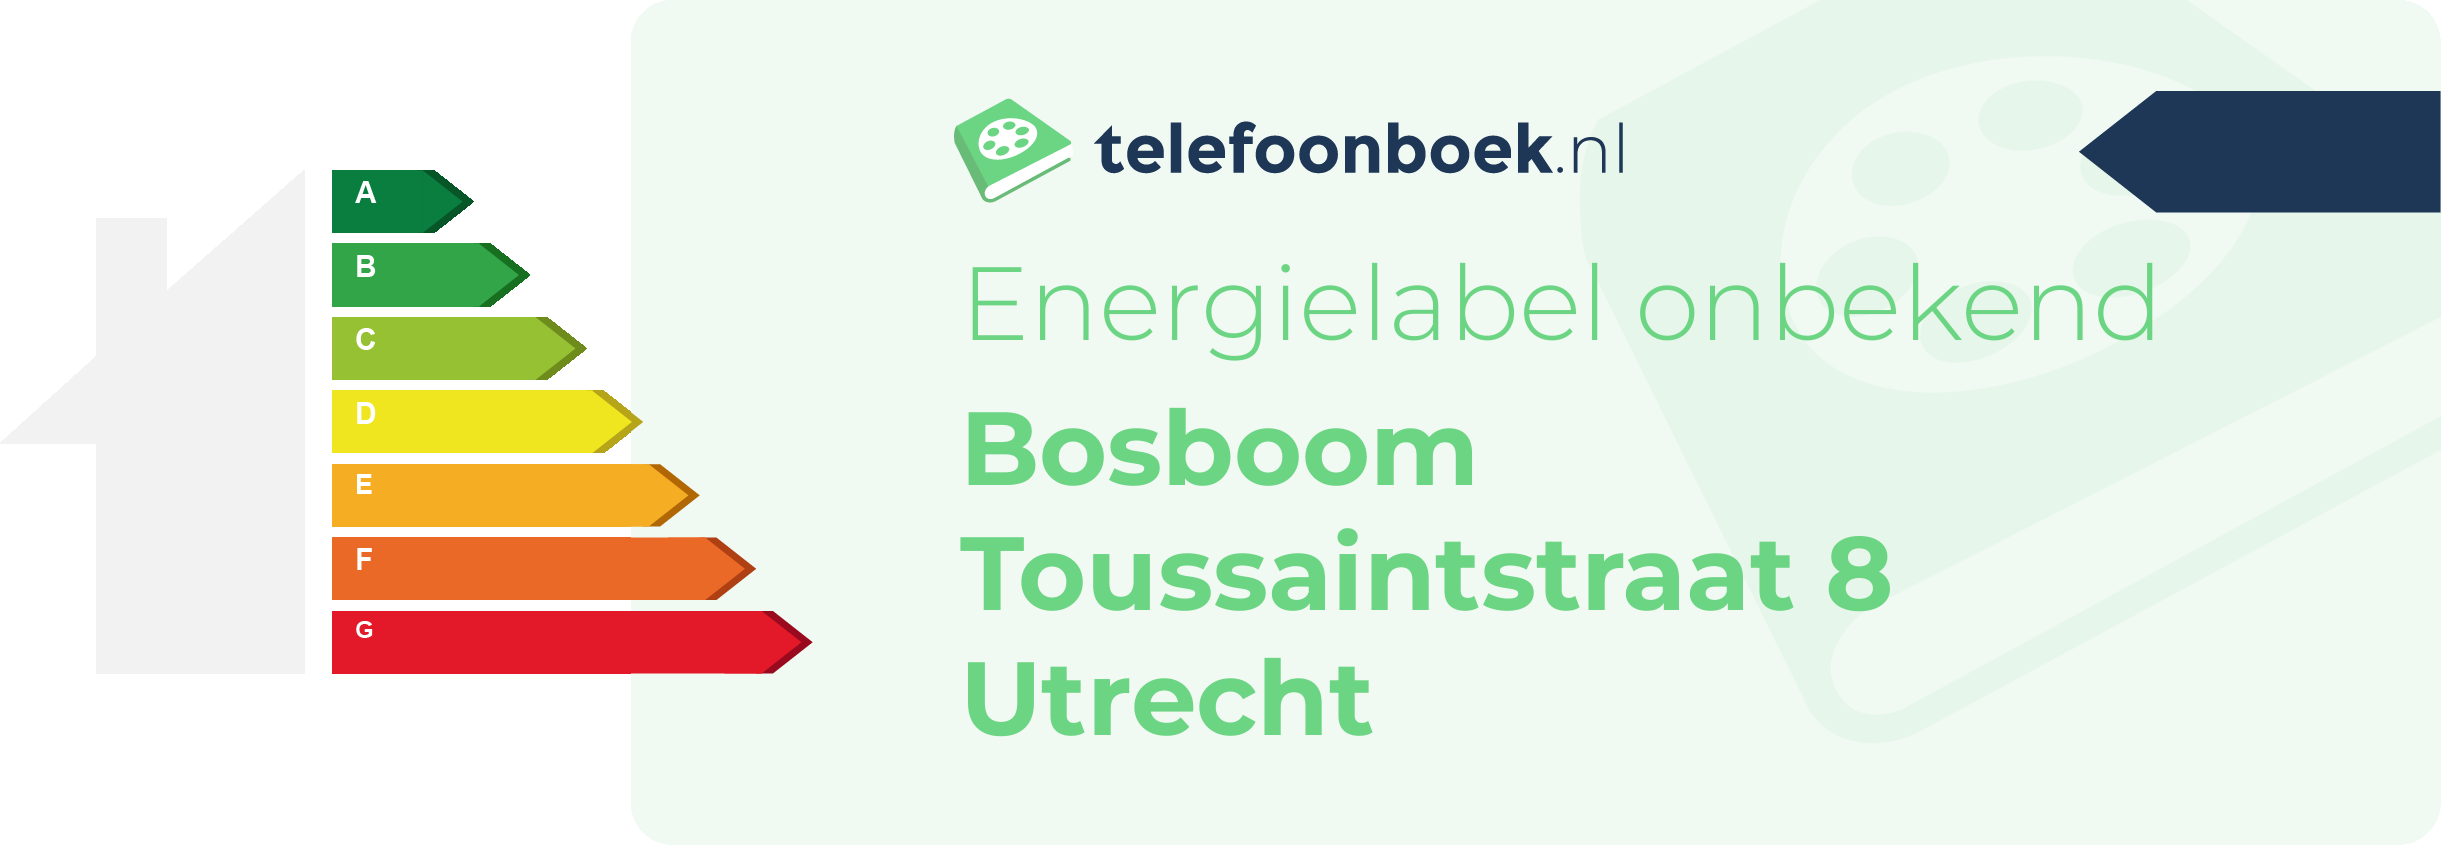 Energielabel Bosboom Toussaintstraat 8 Utrecht